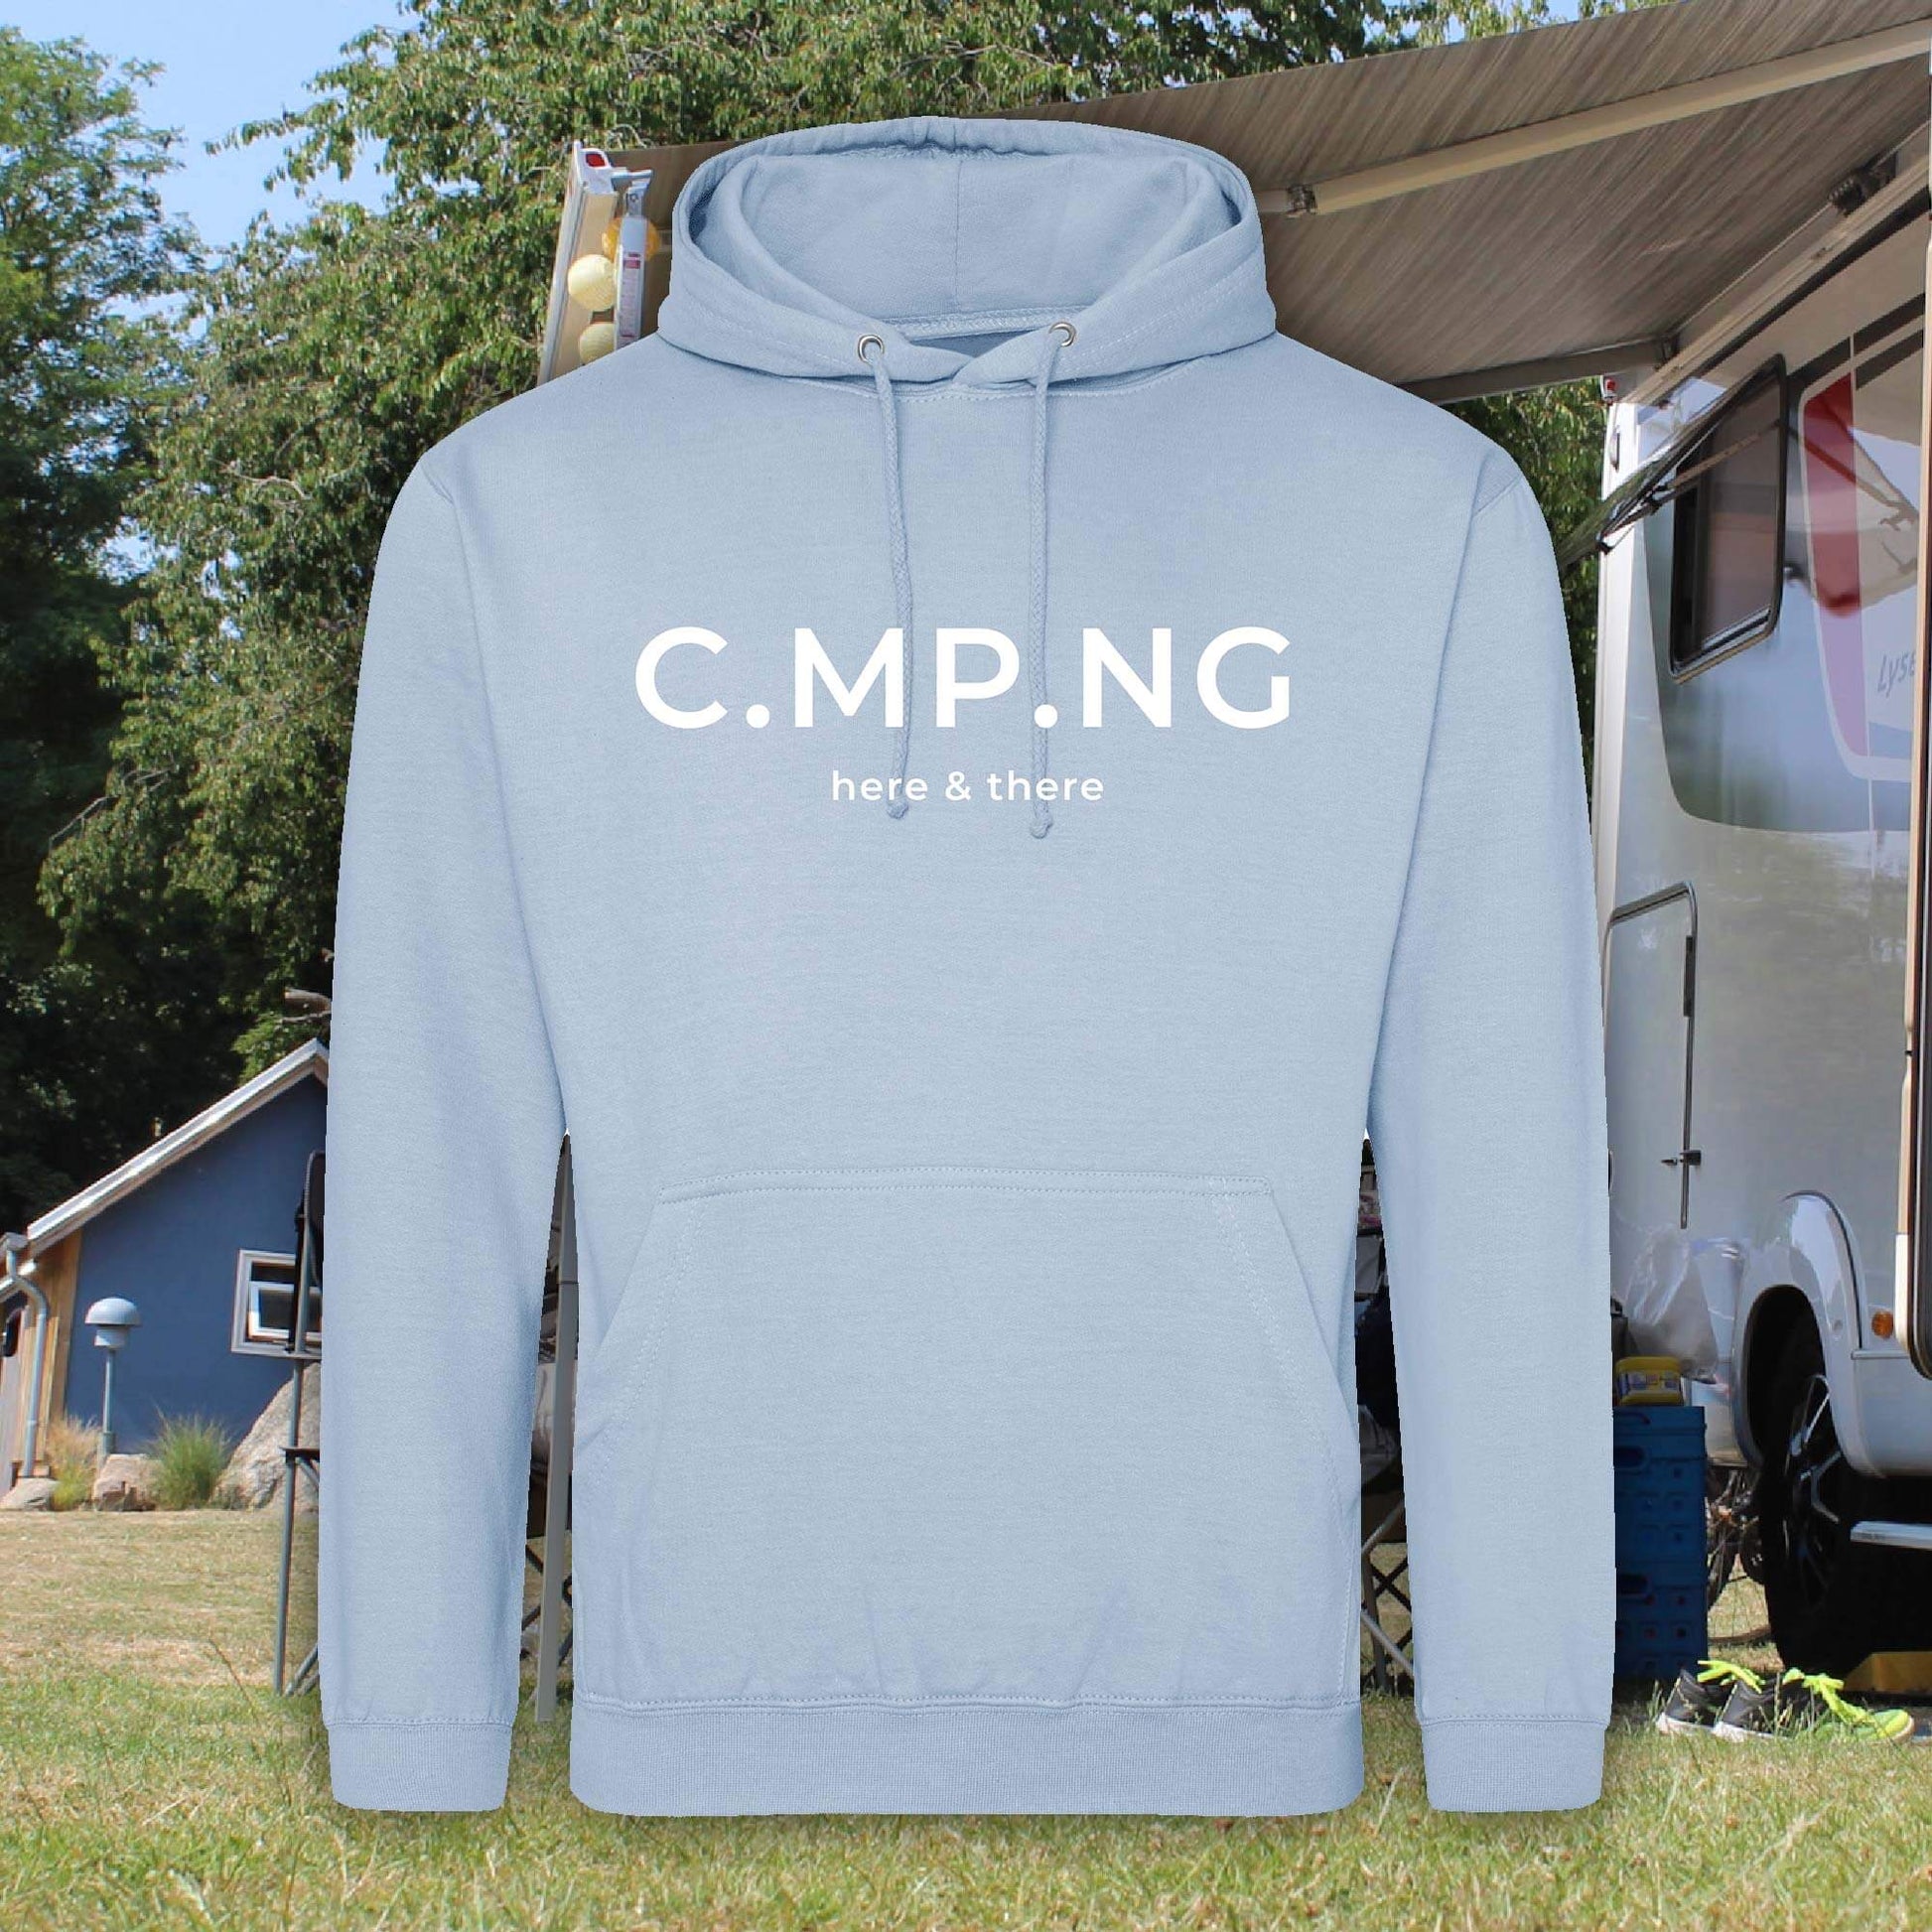 Camping-Hoodie in hellblau mit weißem C.MP.NG-Aufdruck